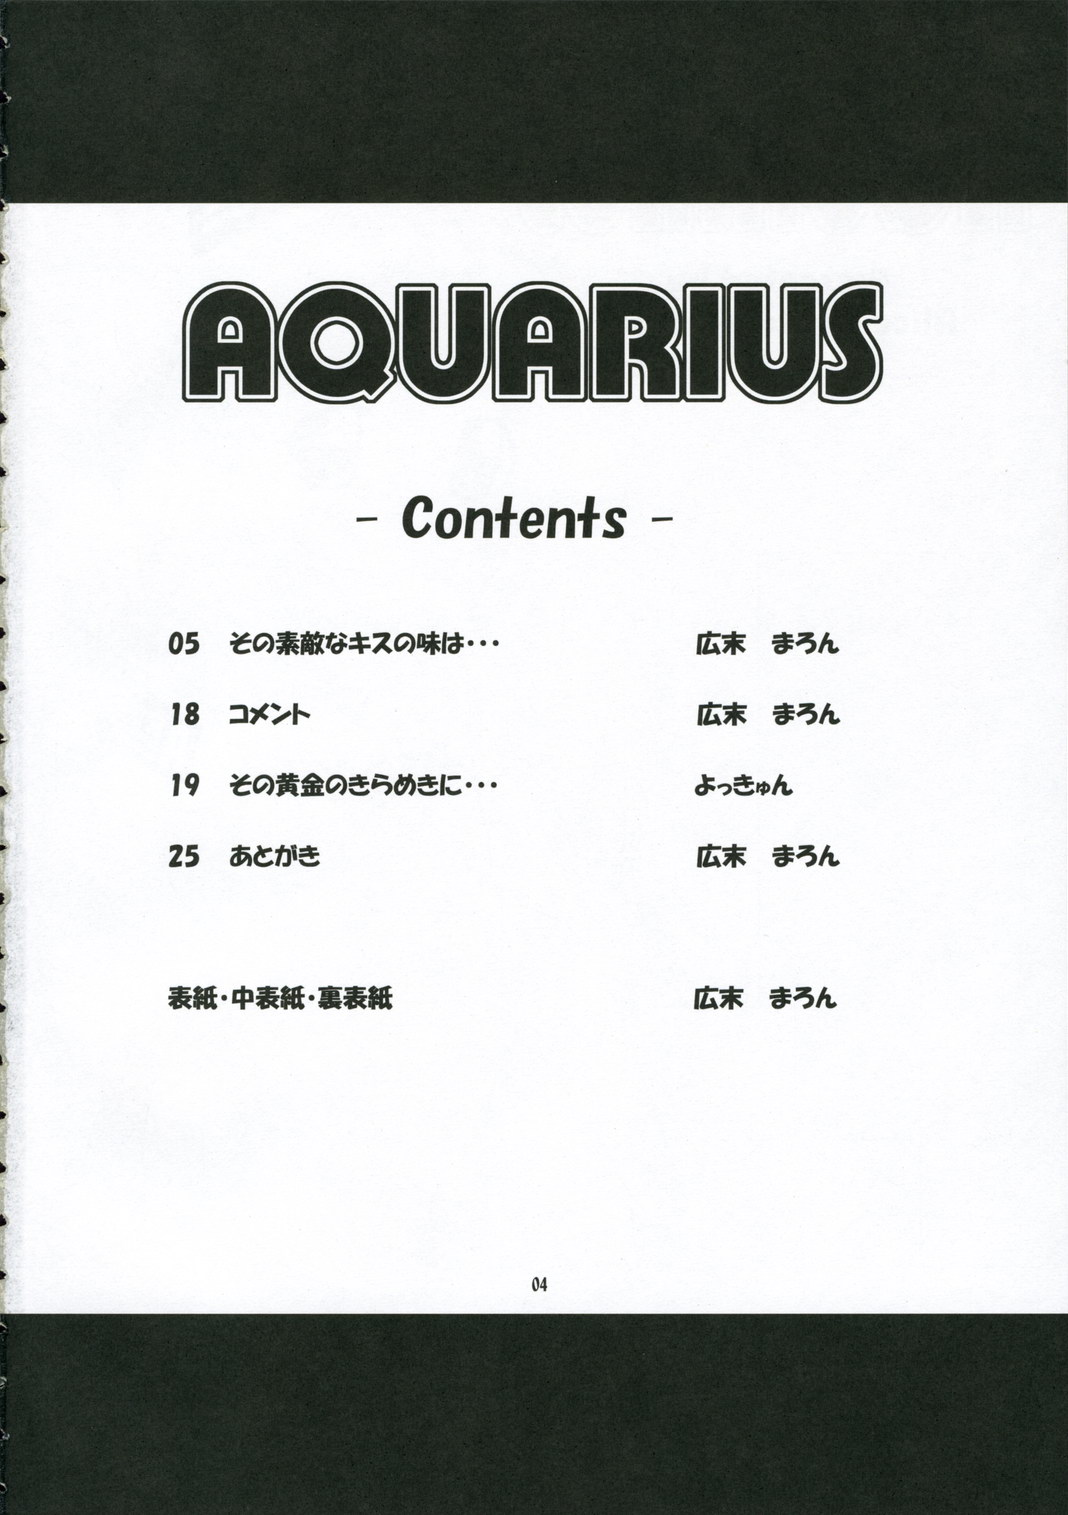 (C70) [Alice Digital Factory (広末まろん)] AQUARiUS (ARIA)